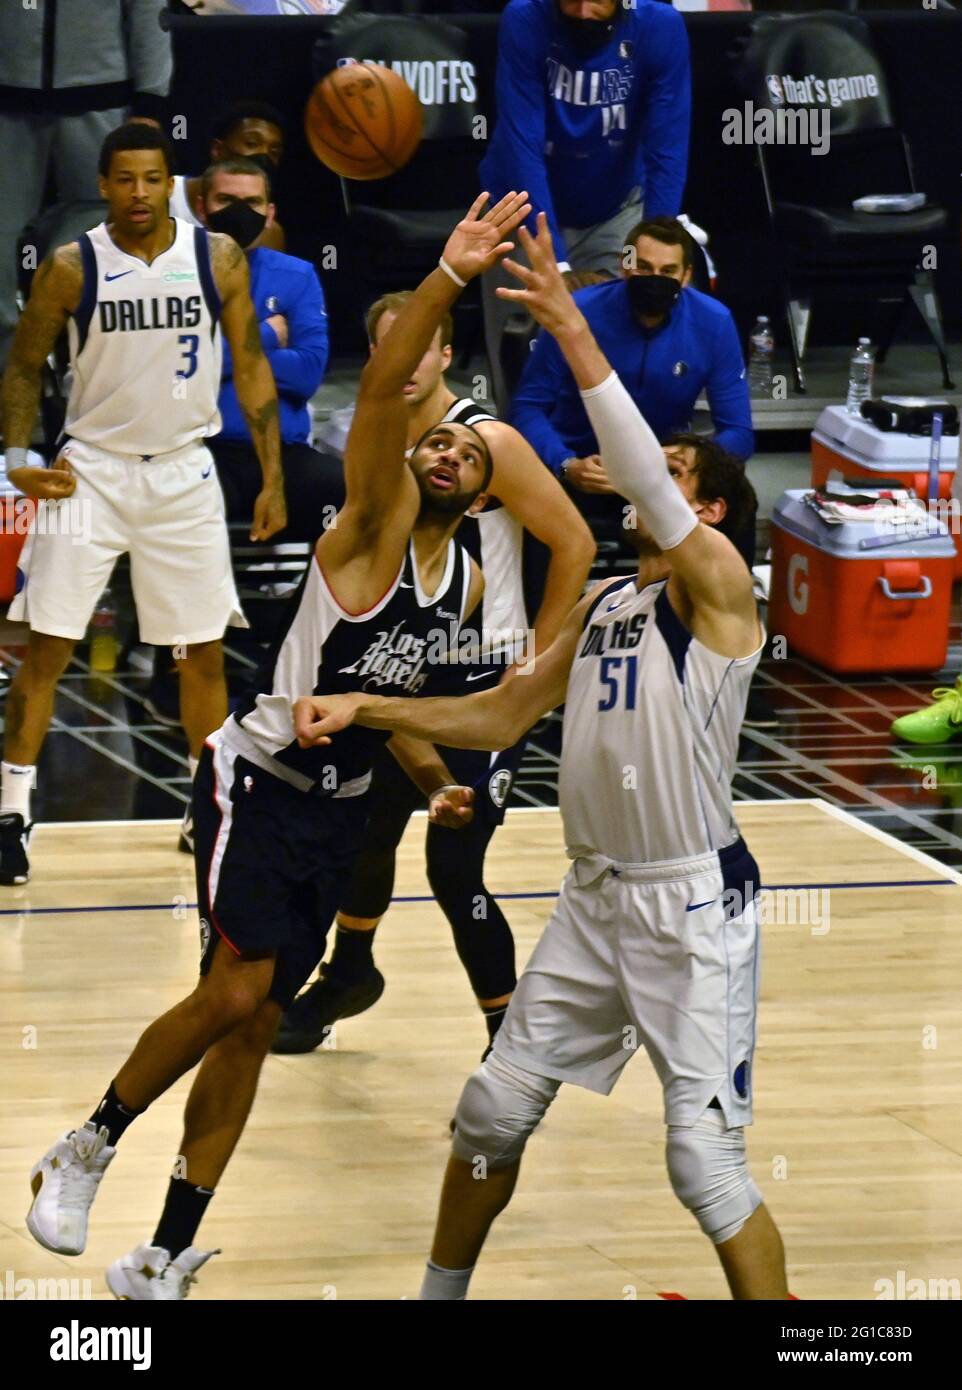 Dallas Mavericks guard Boban Marjanovic (51) poses during NBA